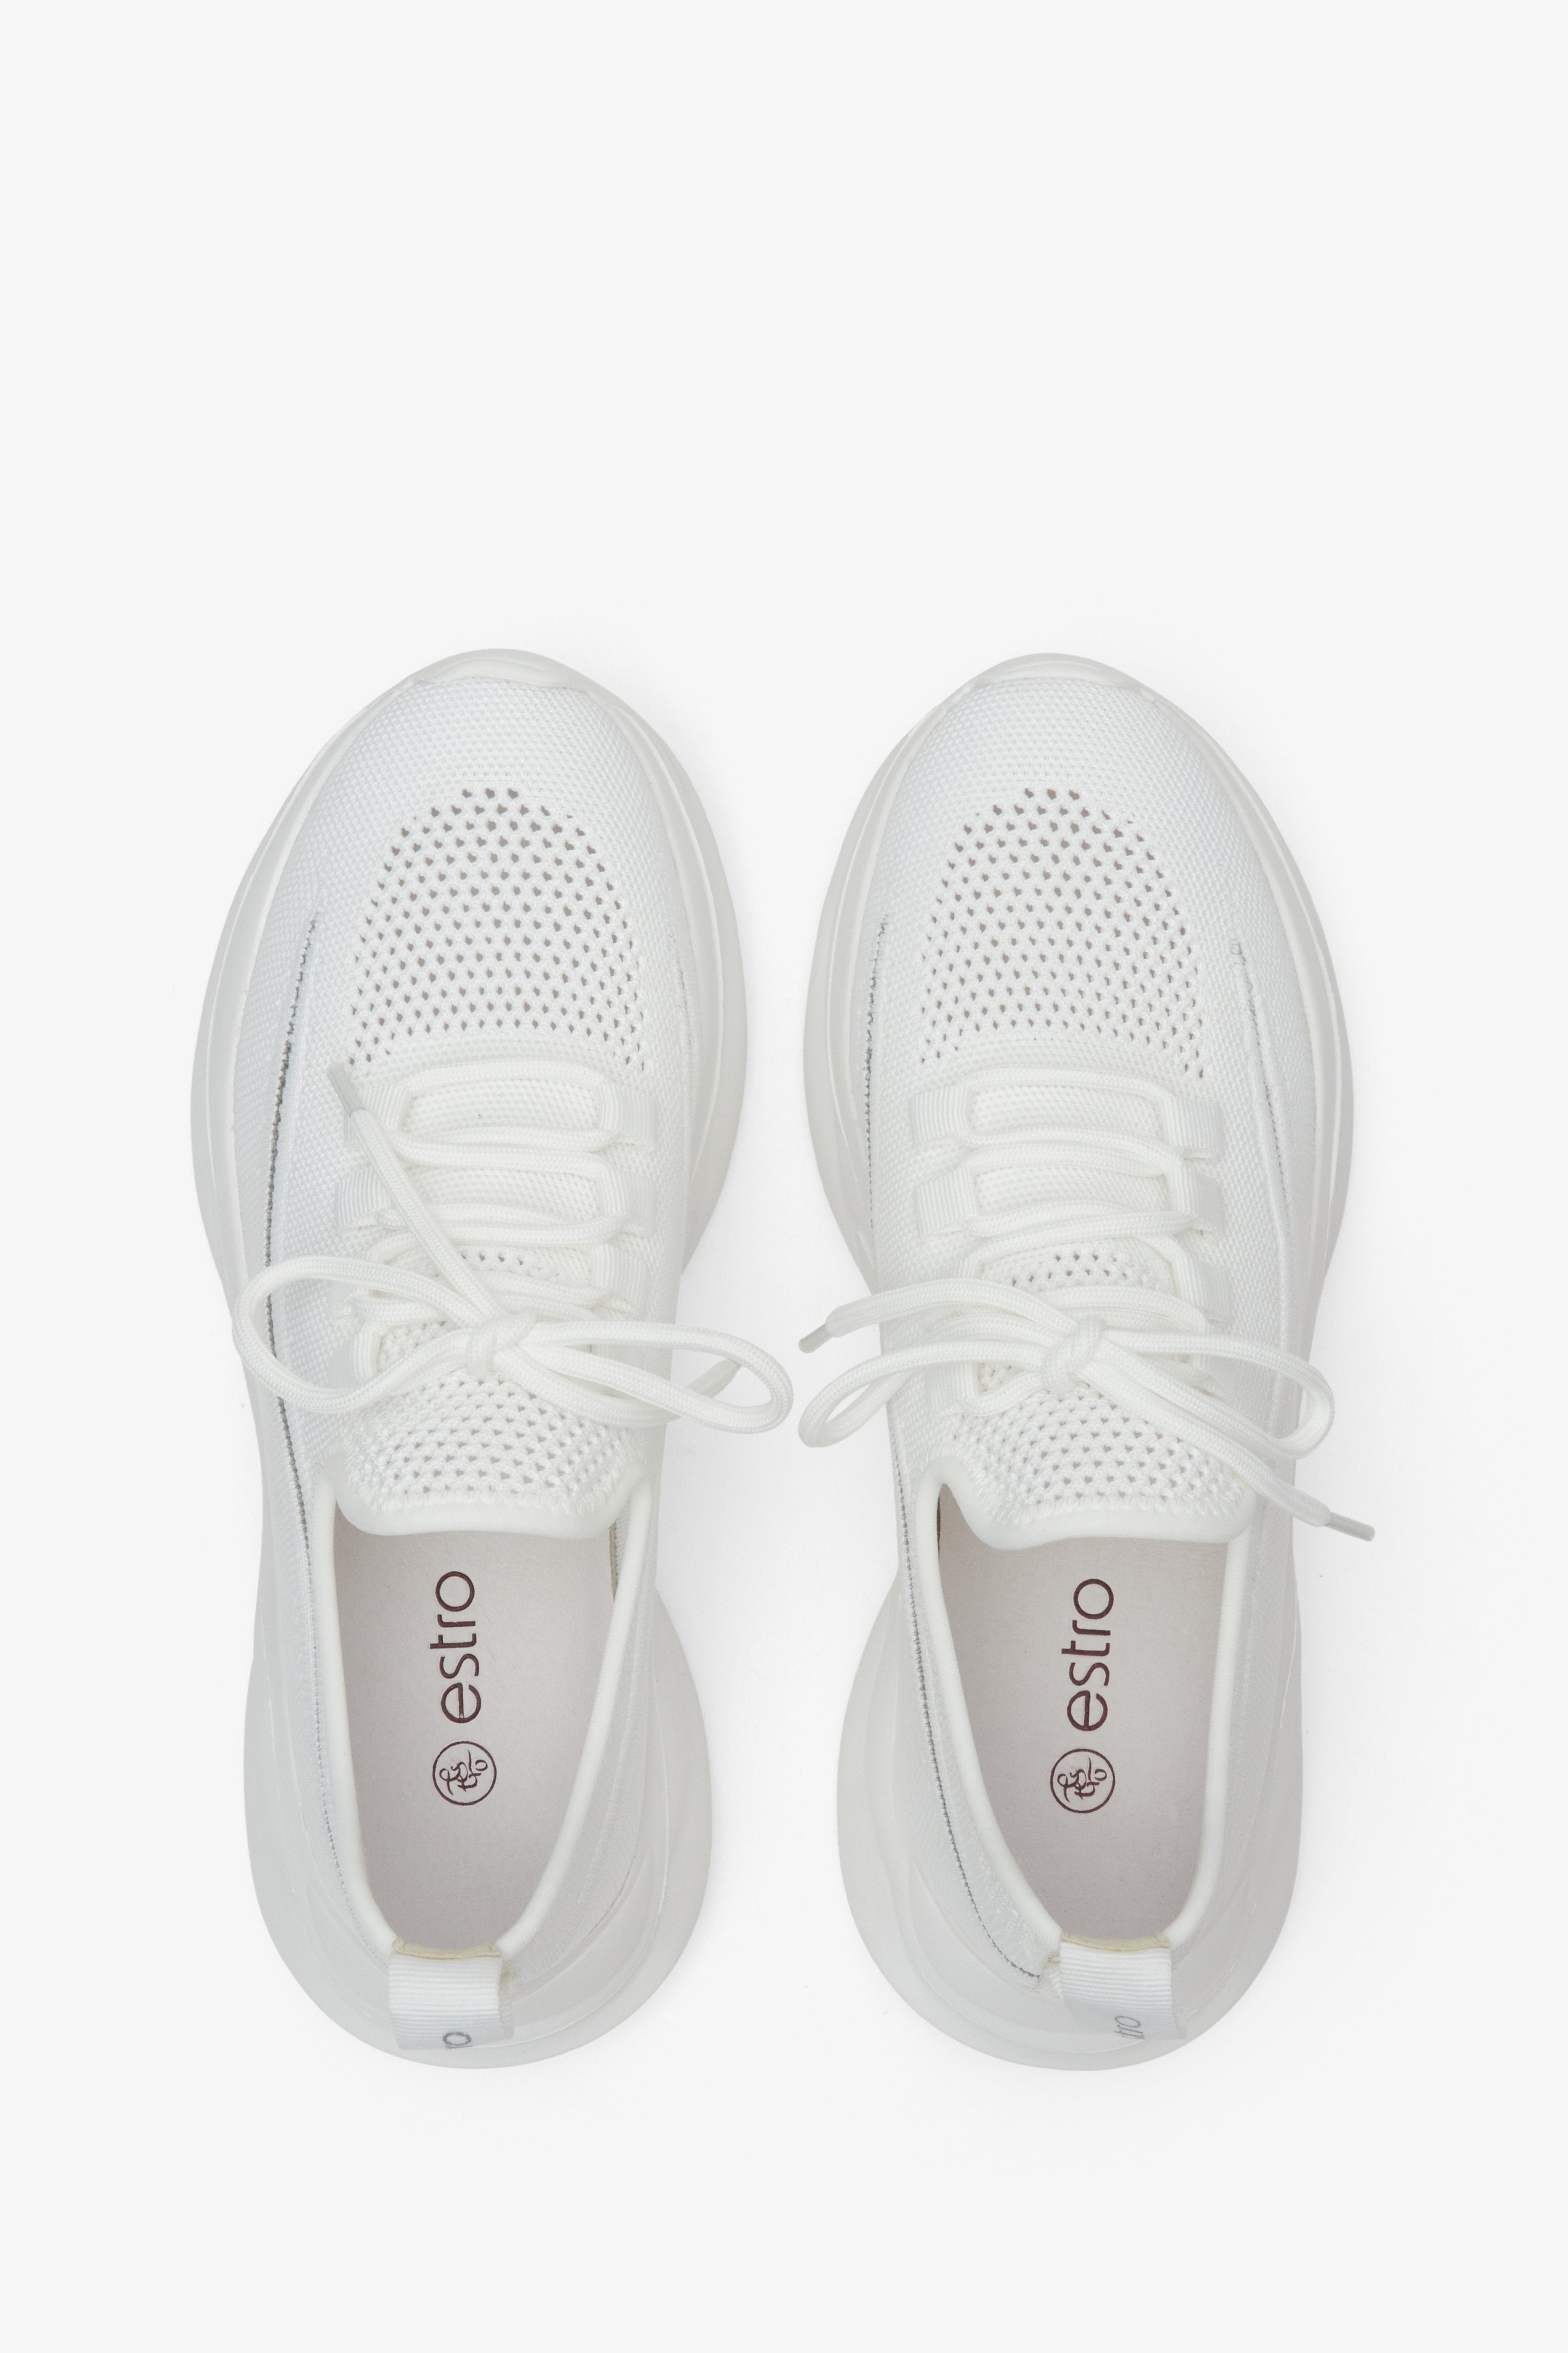 Sneakersy damskie białe z siateczki na lato Estro - prezentacja modelu z góry.